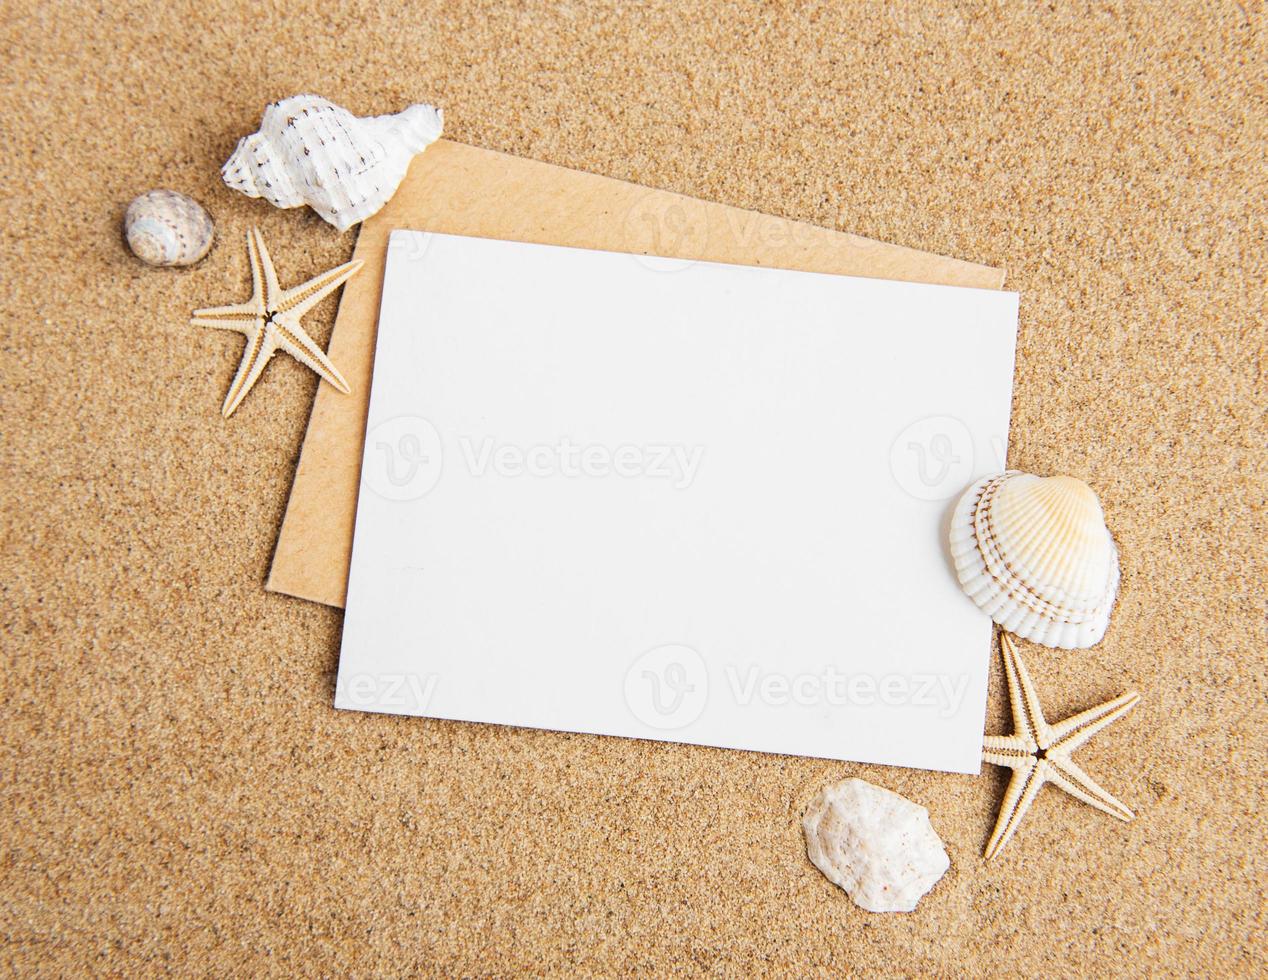 conchas, estrelas do mar e um cartão postal em branco foto